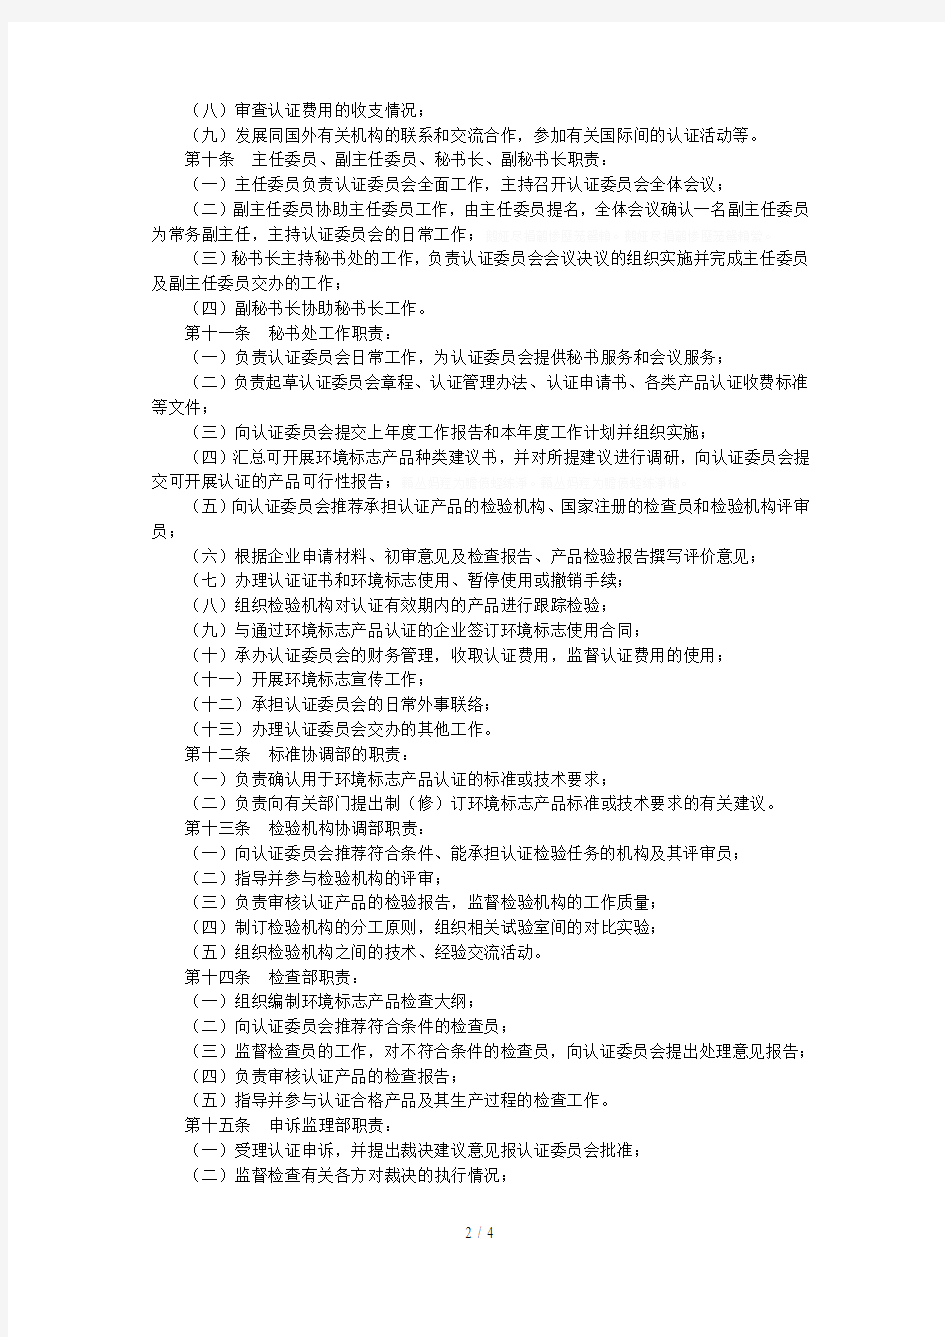 中国环境标志产品认证委员会章程